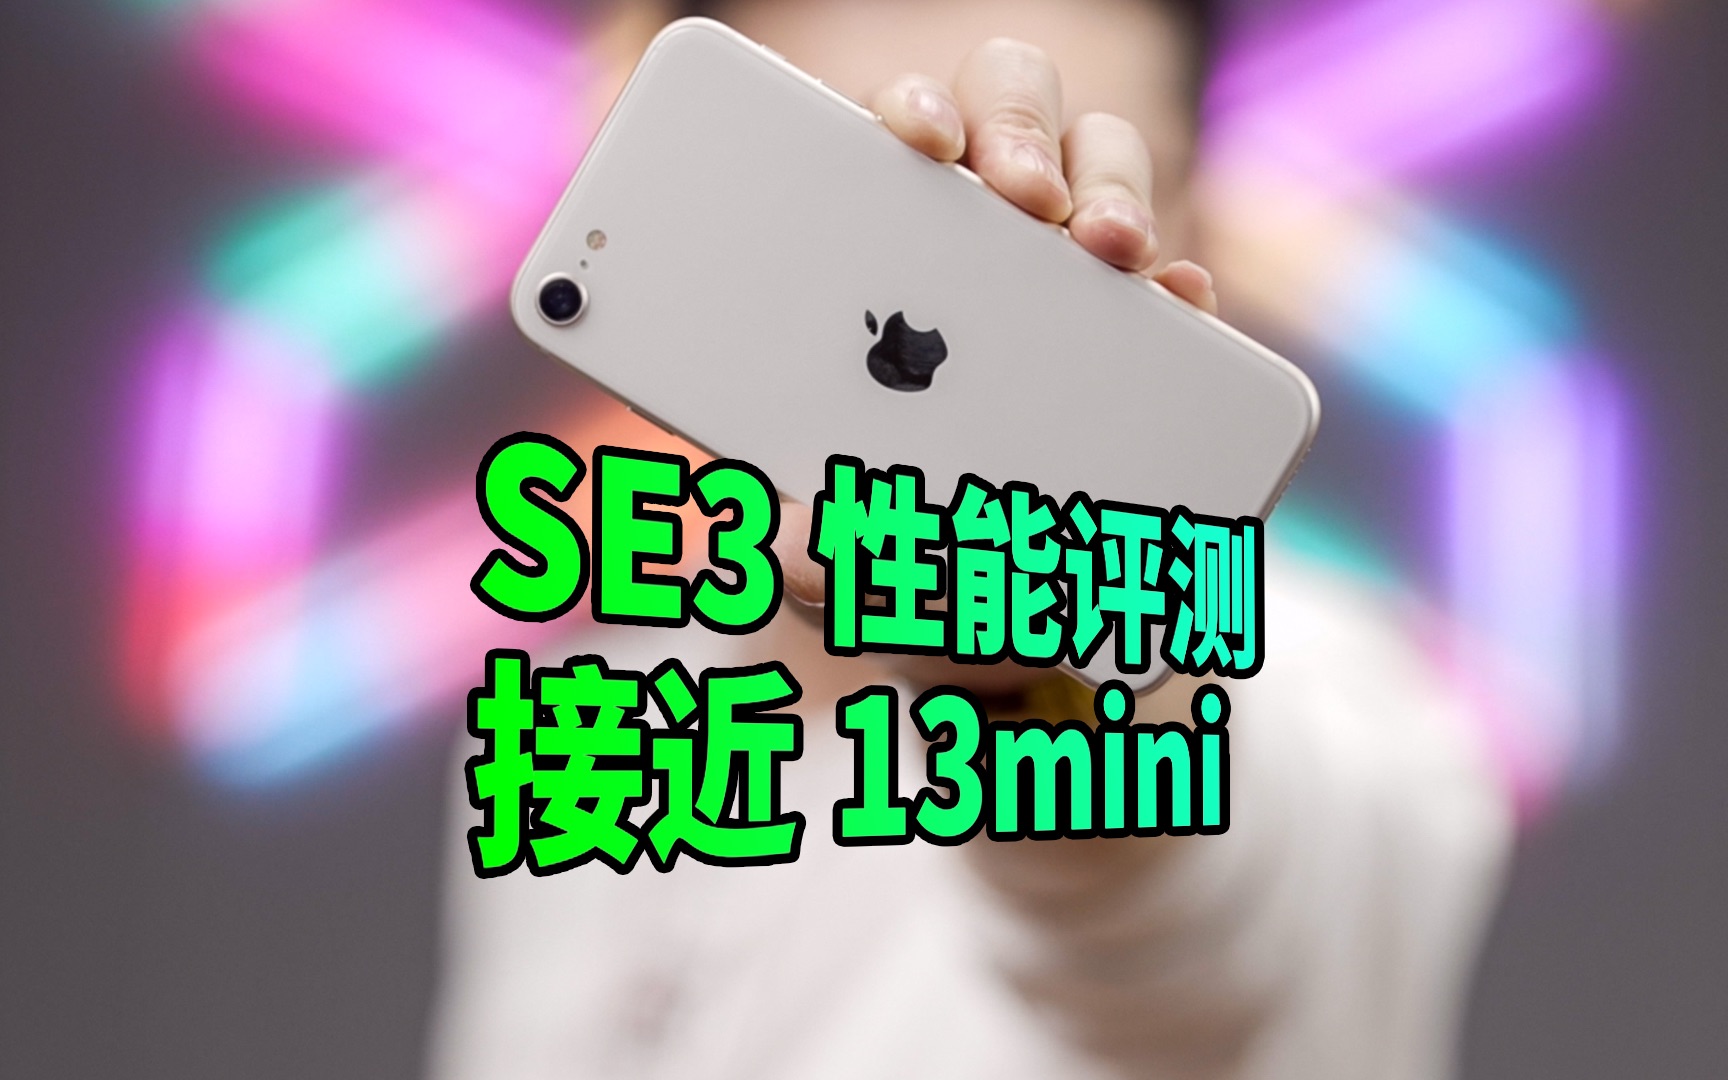 【阿正】iPhoneSE3性能相当于13mini却比它更省电、SE3评测